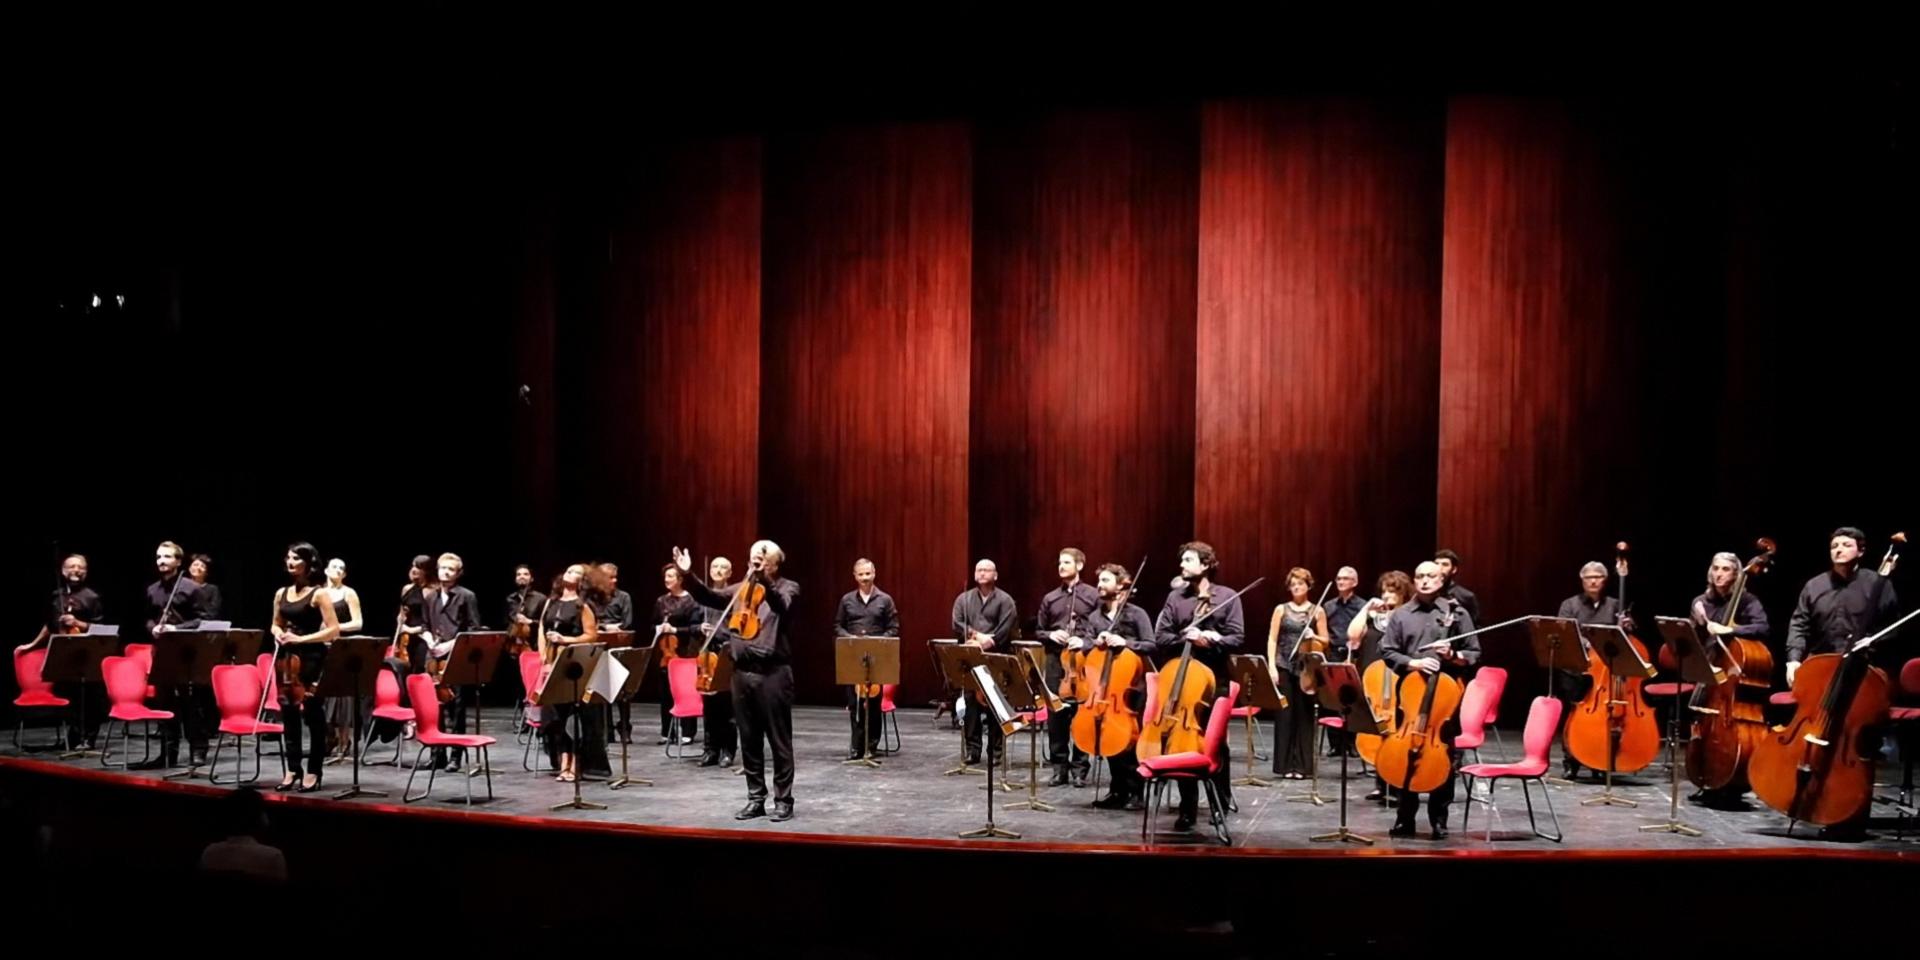 L'Orchestra d'archi Teatro Regio Torino riceve gli applausi sul palco